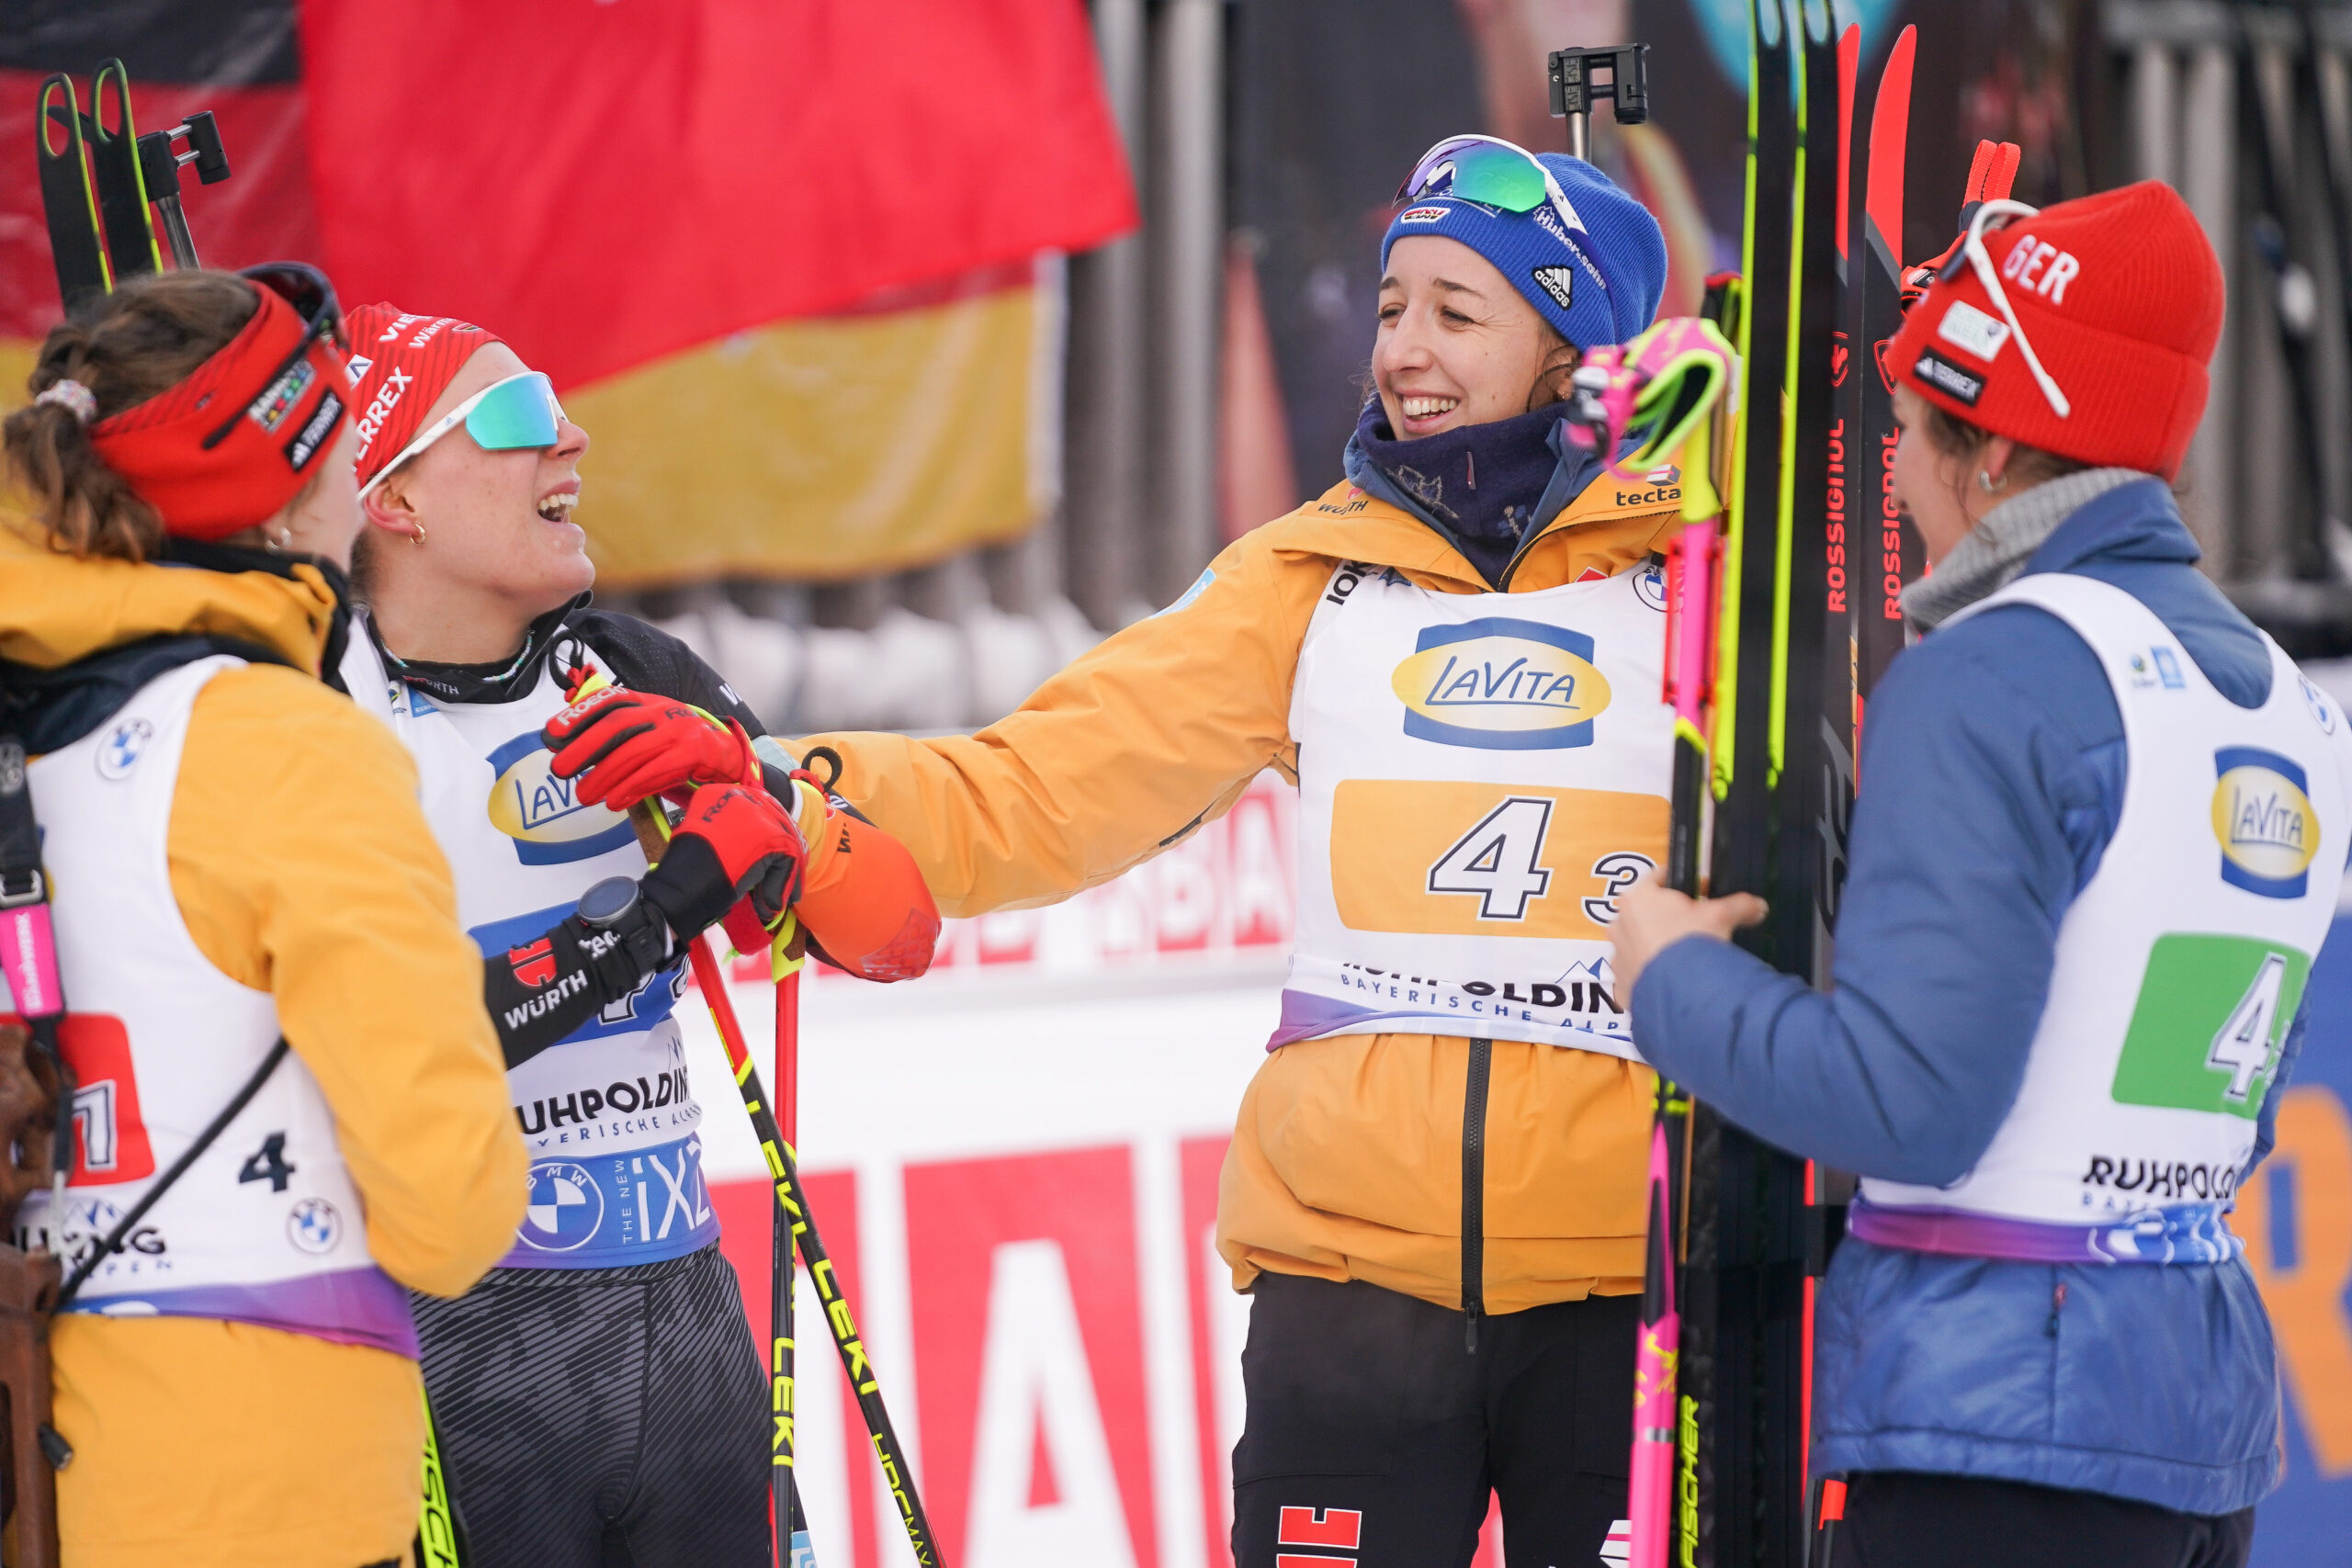 Platz drei in der Staffel: Janina Hettich-Walz, Hanna Kebinger, Franziska Preuß, Sophia Schneider (l.n.r.)freuen sich über den Erfolg beim Heimweltcup in Ruhpolding